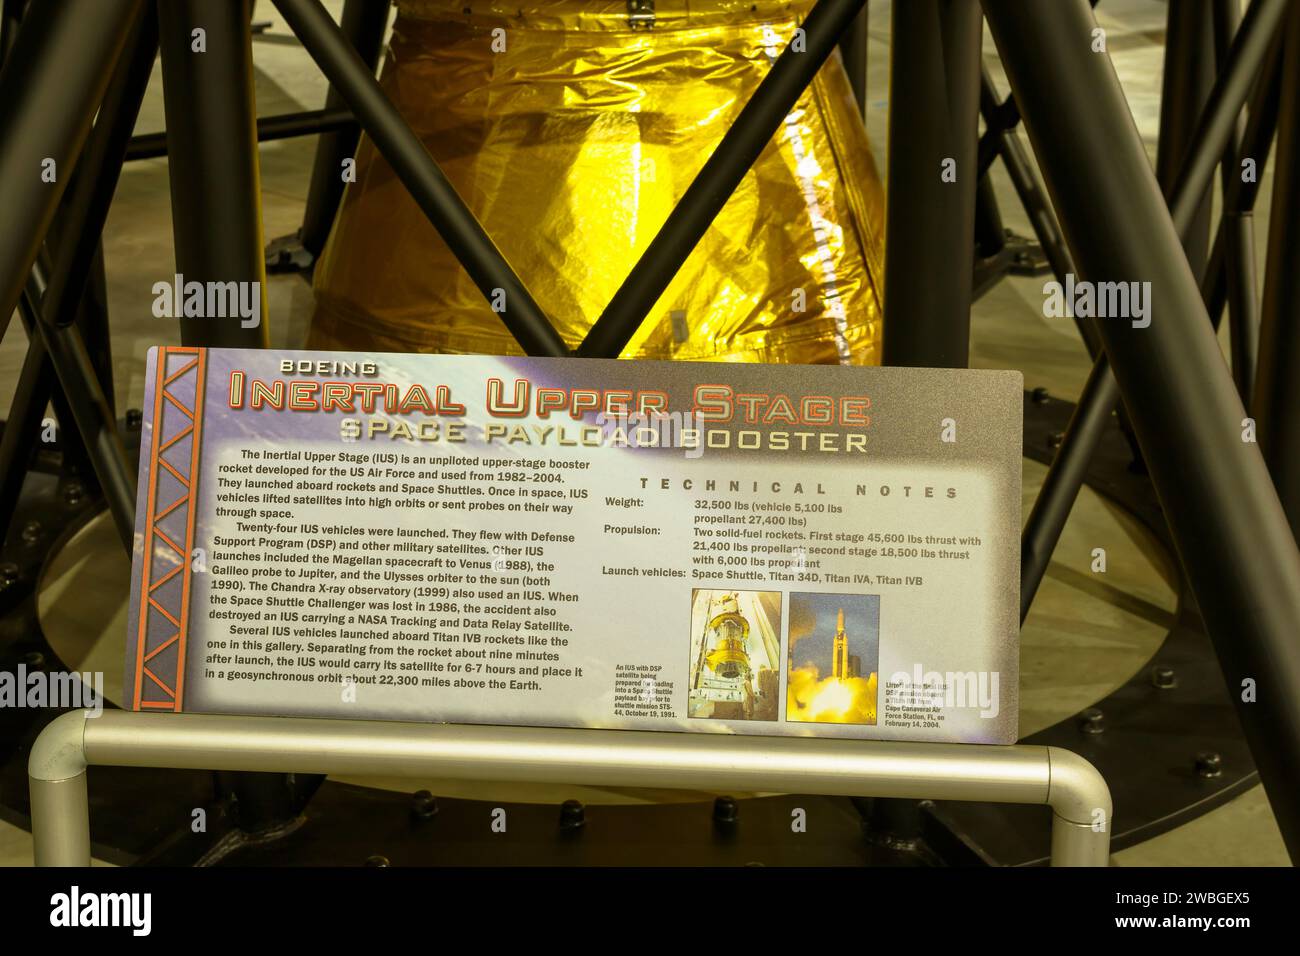 Étage supérieur inertiel Boeing. Booster de charge utile de l'espace. Musée national de l'armée de l'air des États-Unis, Dayton, Ohio, États-Unis. Banque D'Images